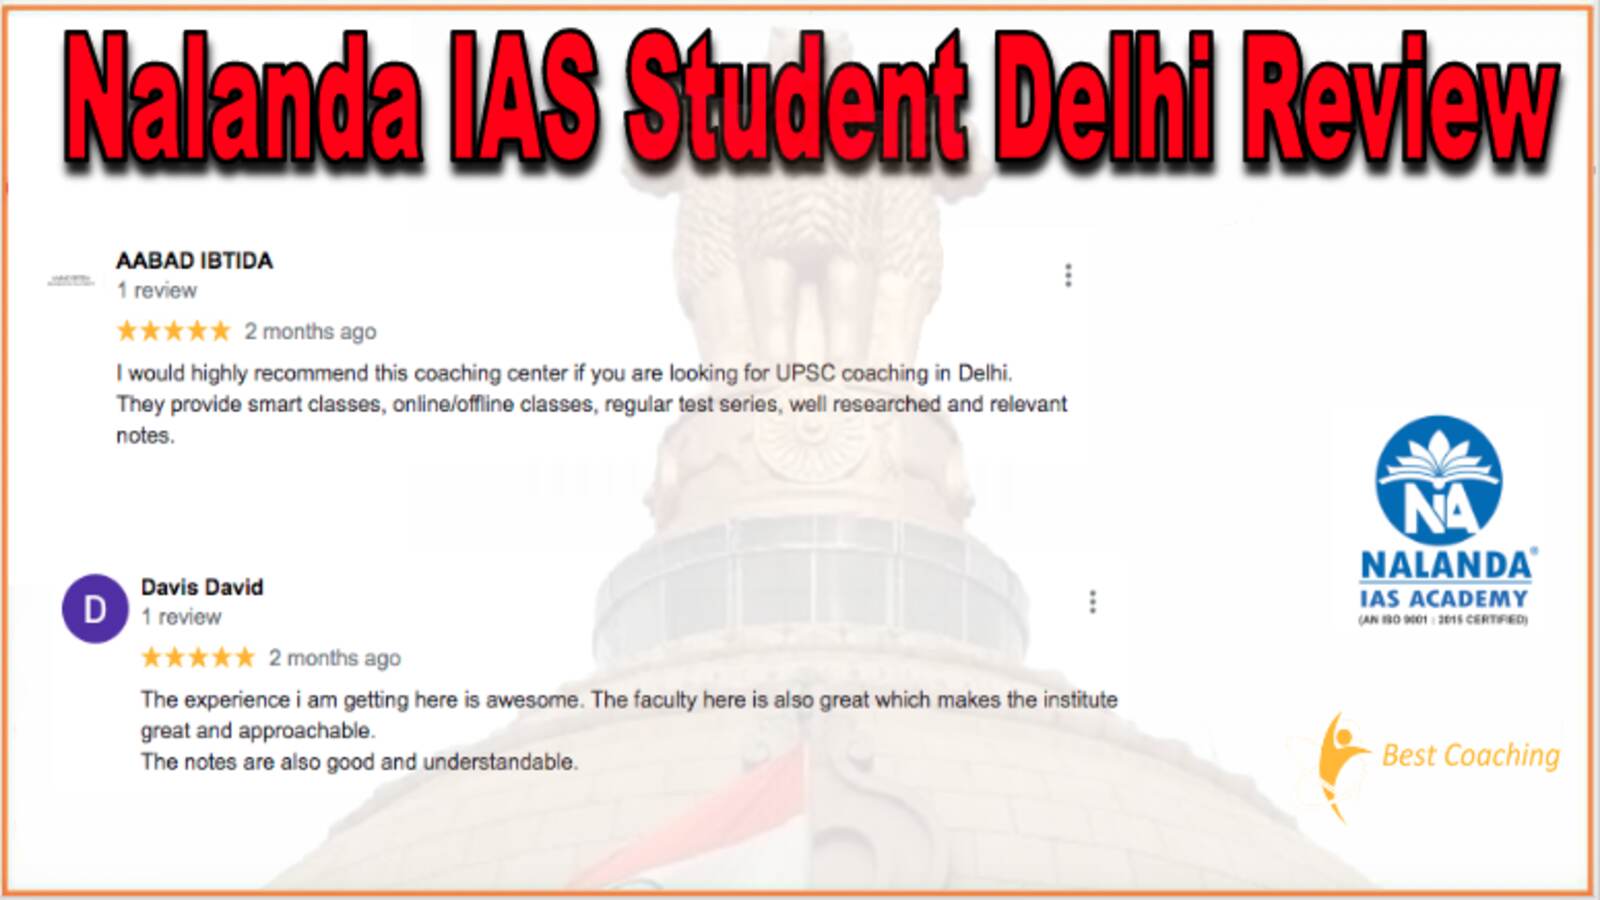 Nalanda IAS Student Delhi Review